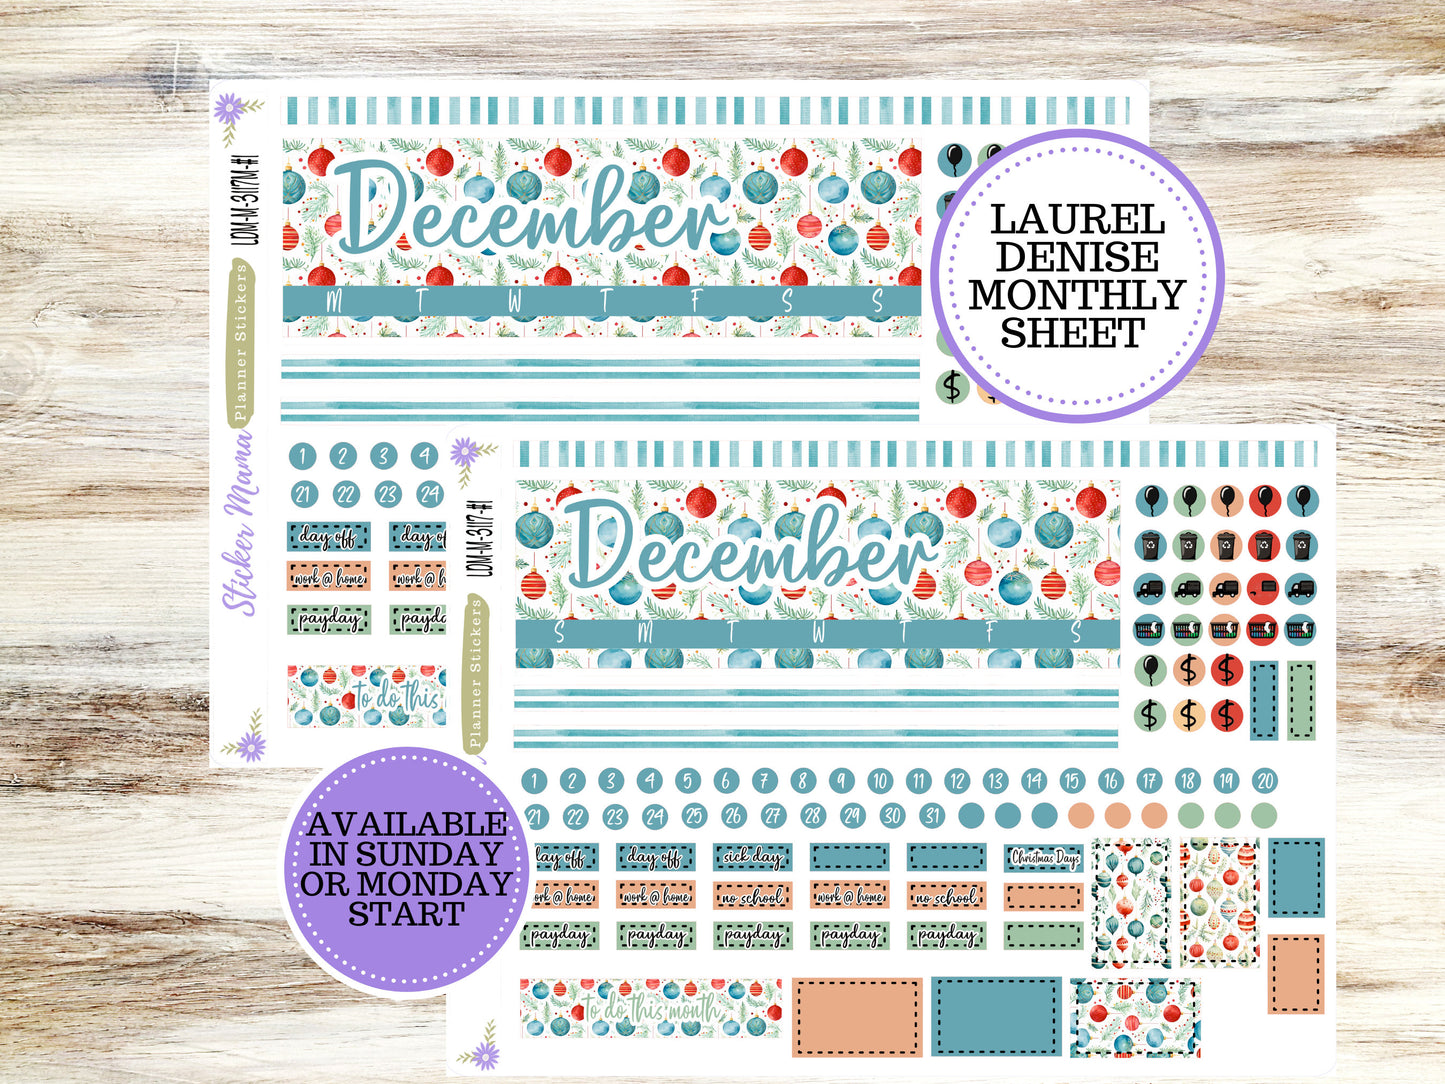 LAUREL DENISE MINI Planner Kit #3117 || Laurel Denise Kit || Laurel Denise Stickers || Laurel Denise Horizontal Vertical || December